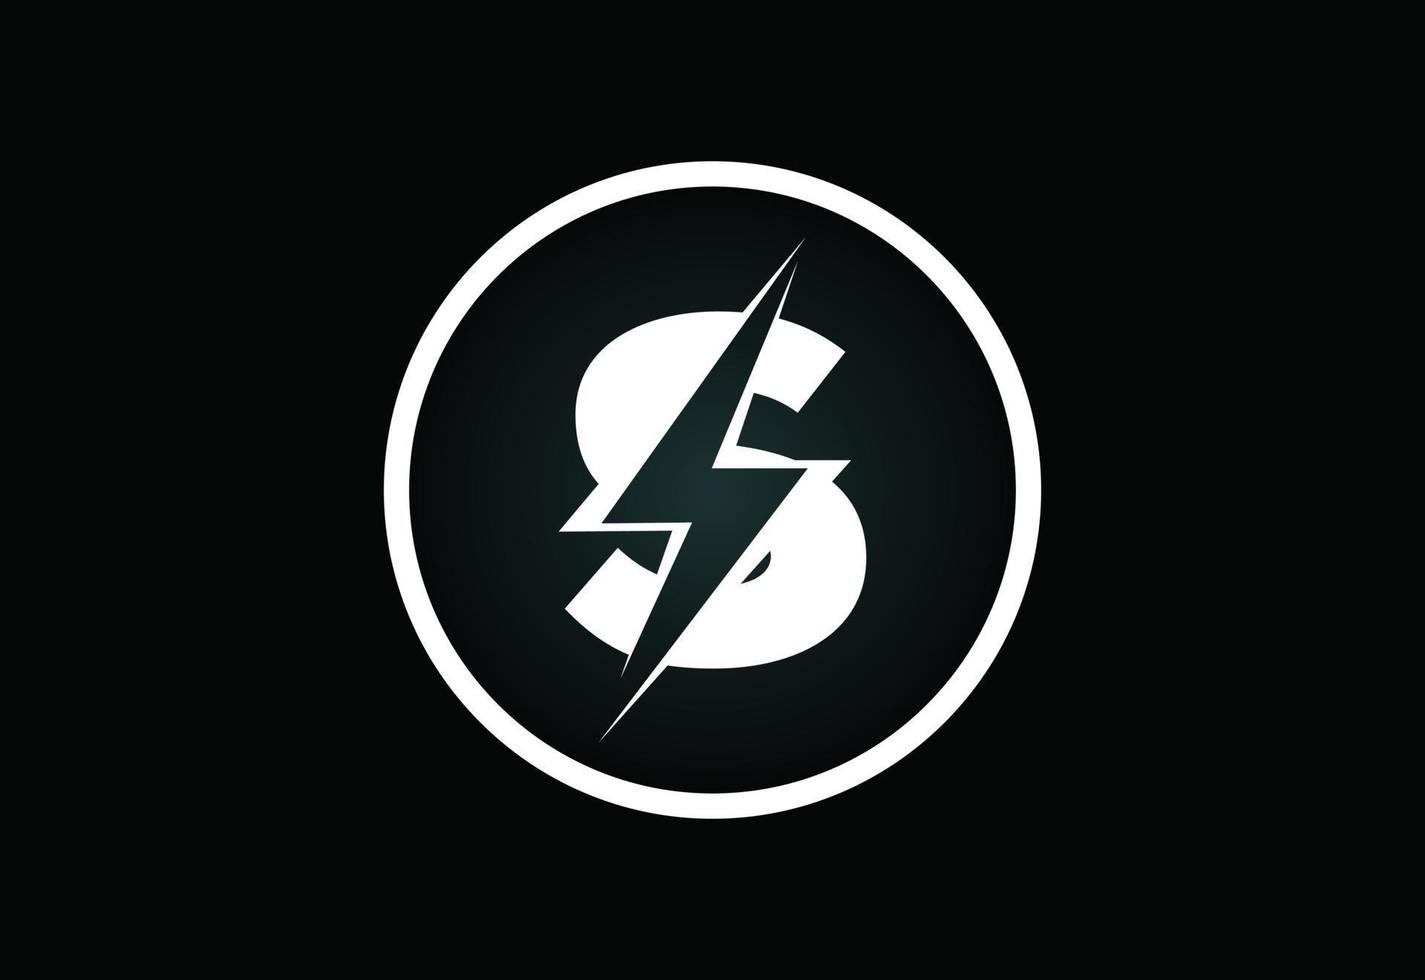 Initial S letter logo design with lighting thunder bolt. Electric bolt letter logo vector